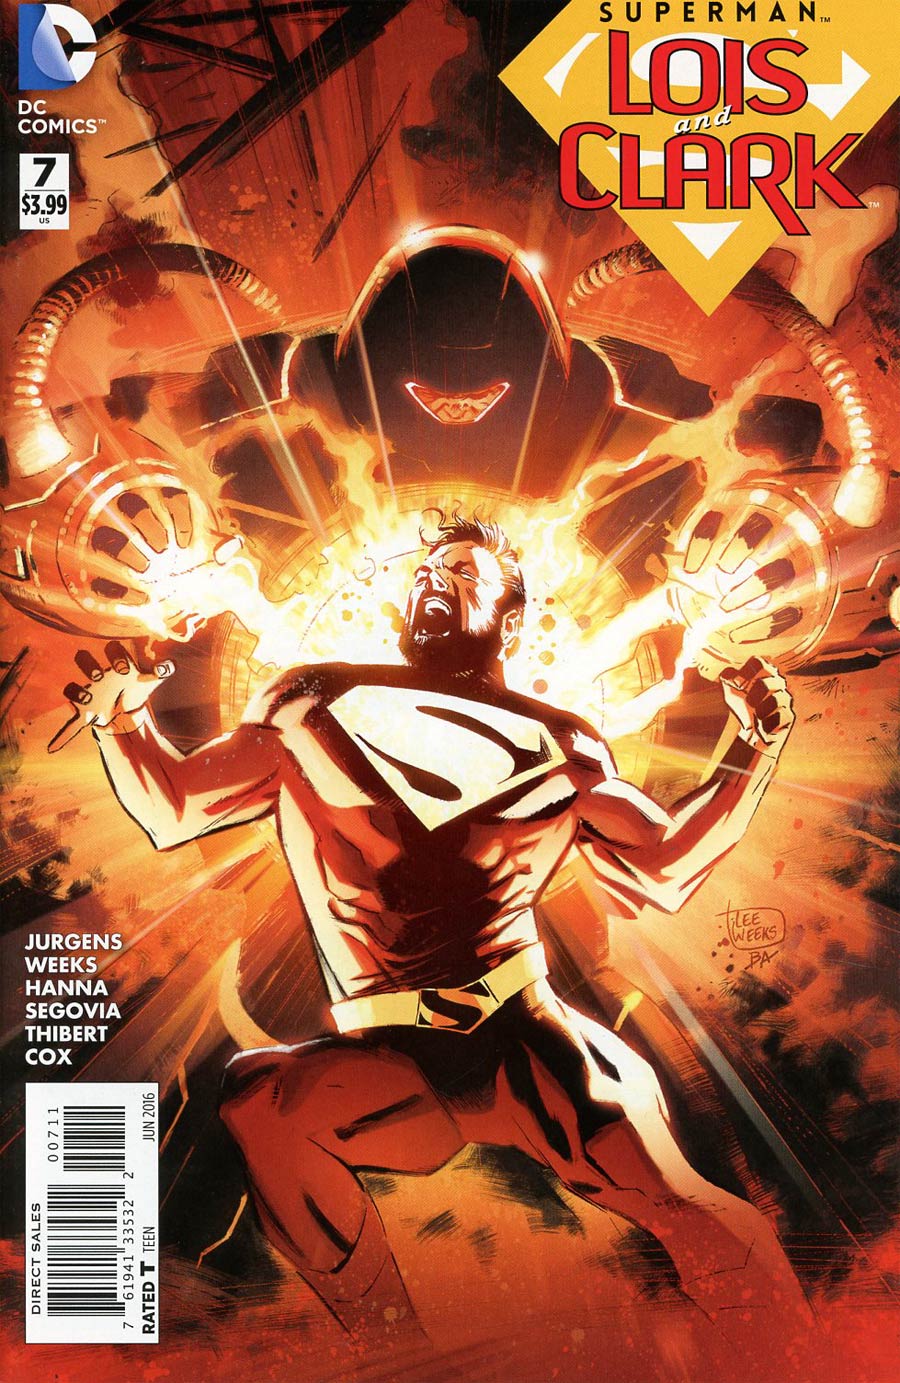 Superman: Lois and Clark #7